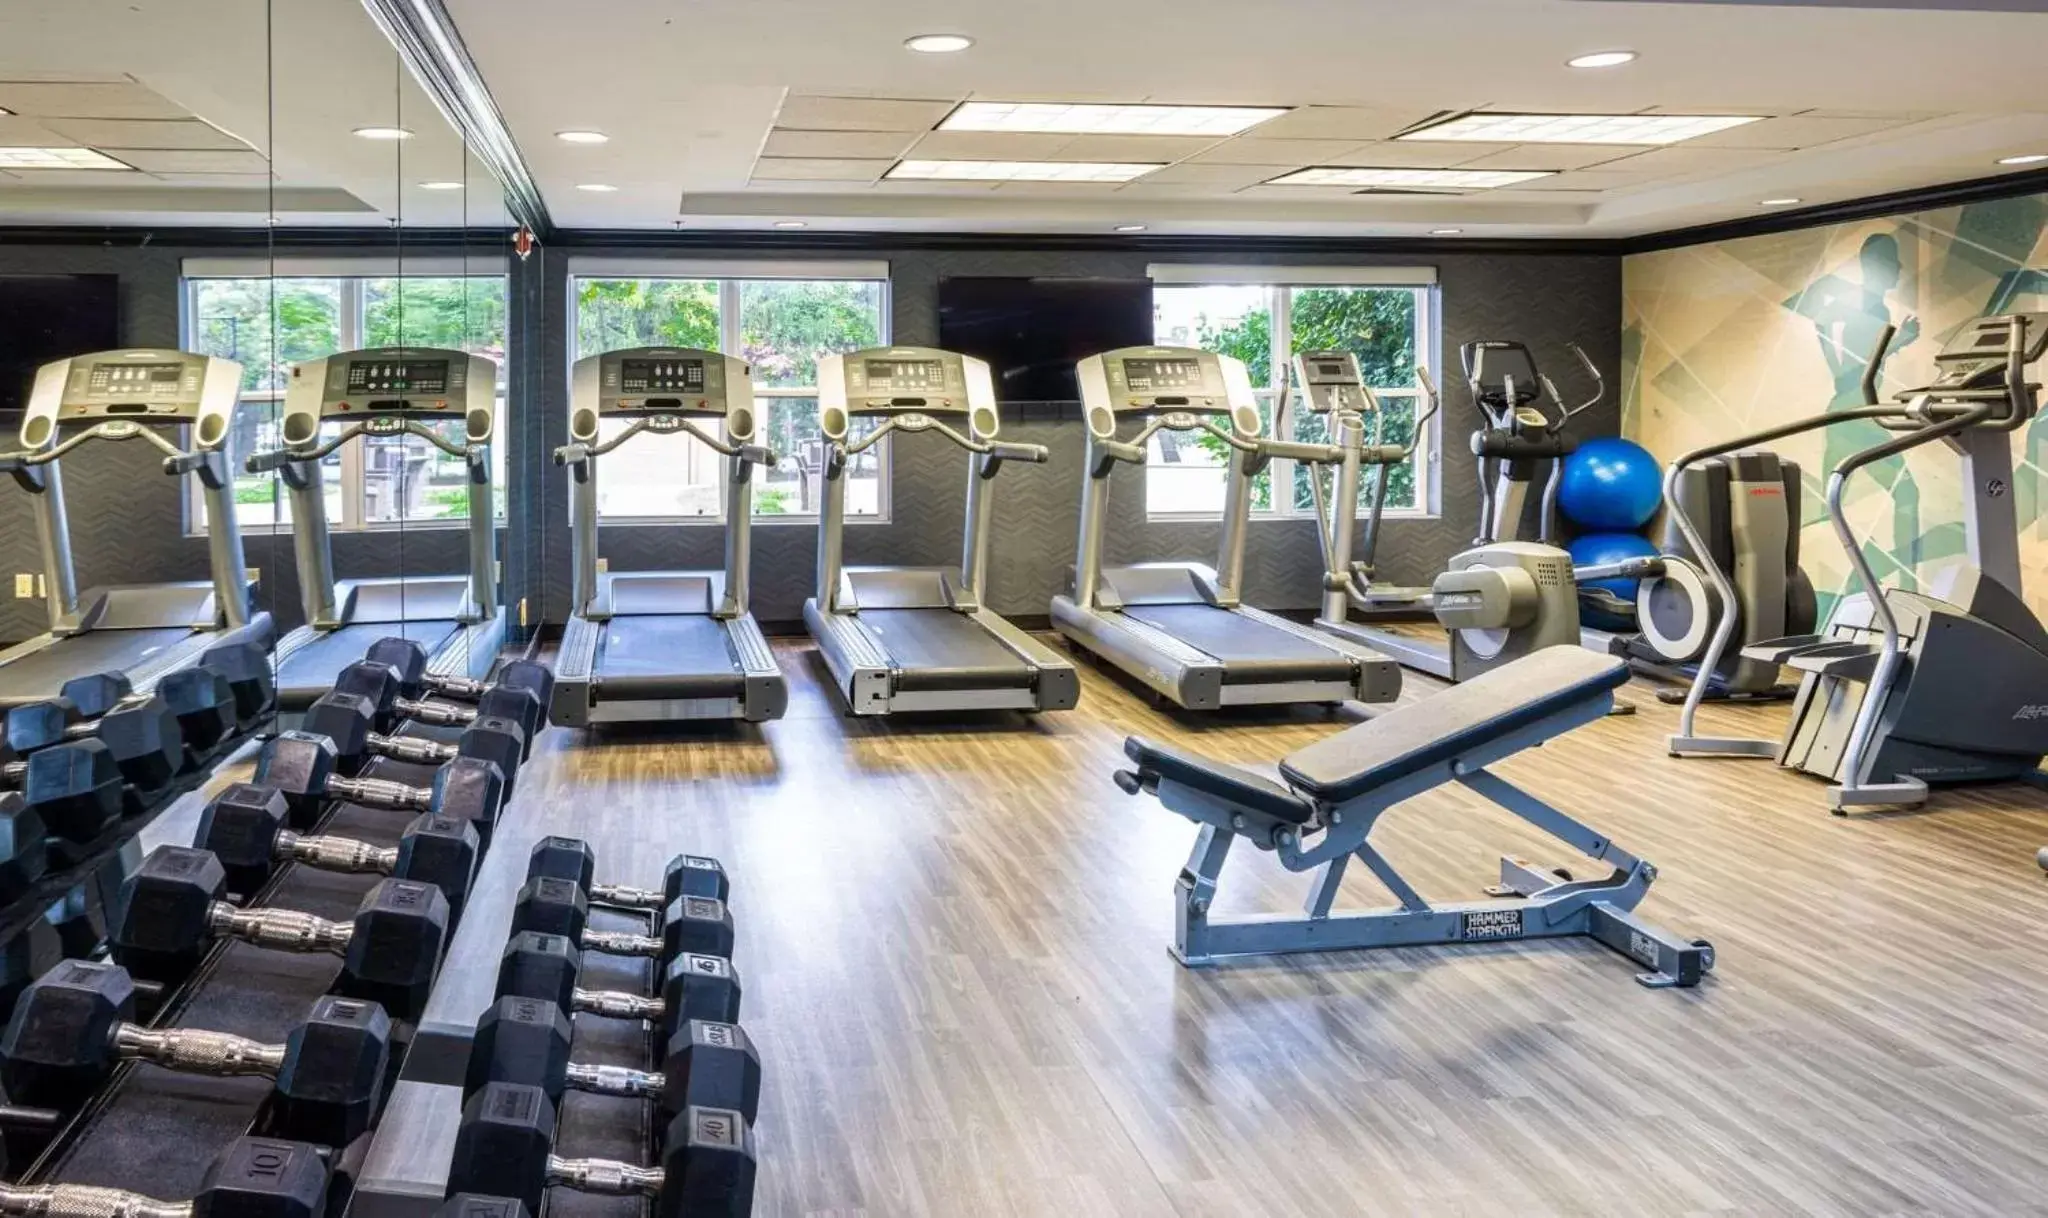 Fitness centre/facilities, Fitness Center/Facilities in Hyatt House Herndon/Reston